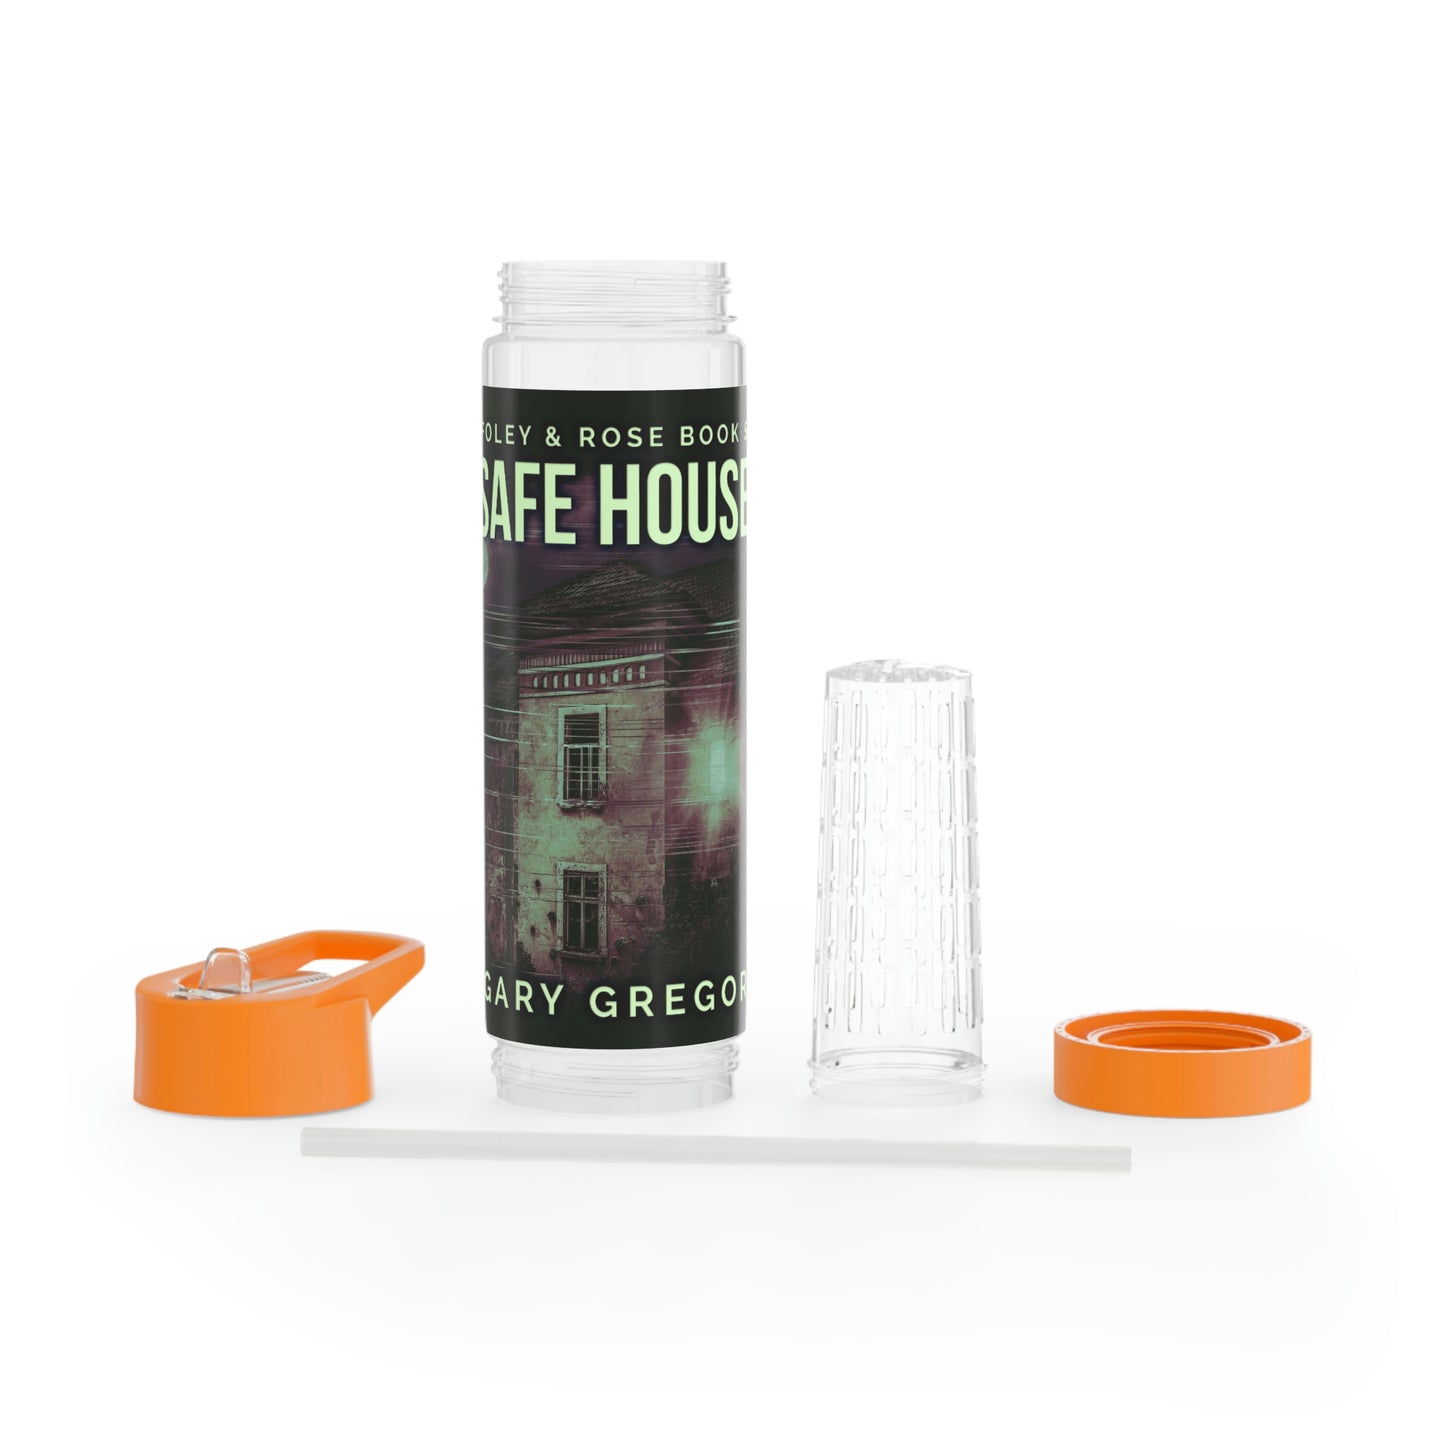 Safe House - Infuser Water Bottle